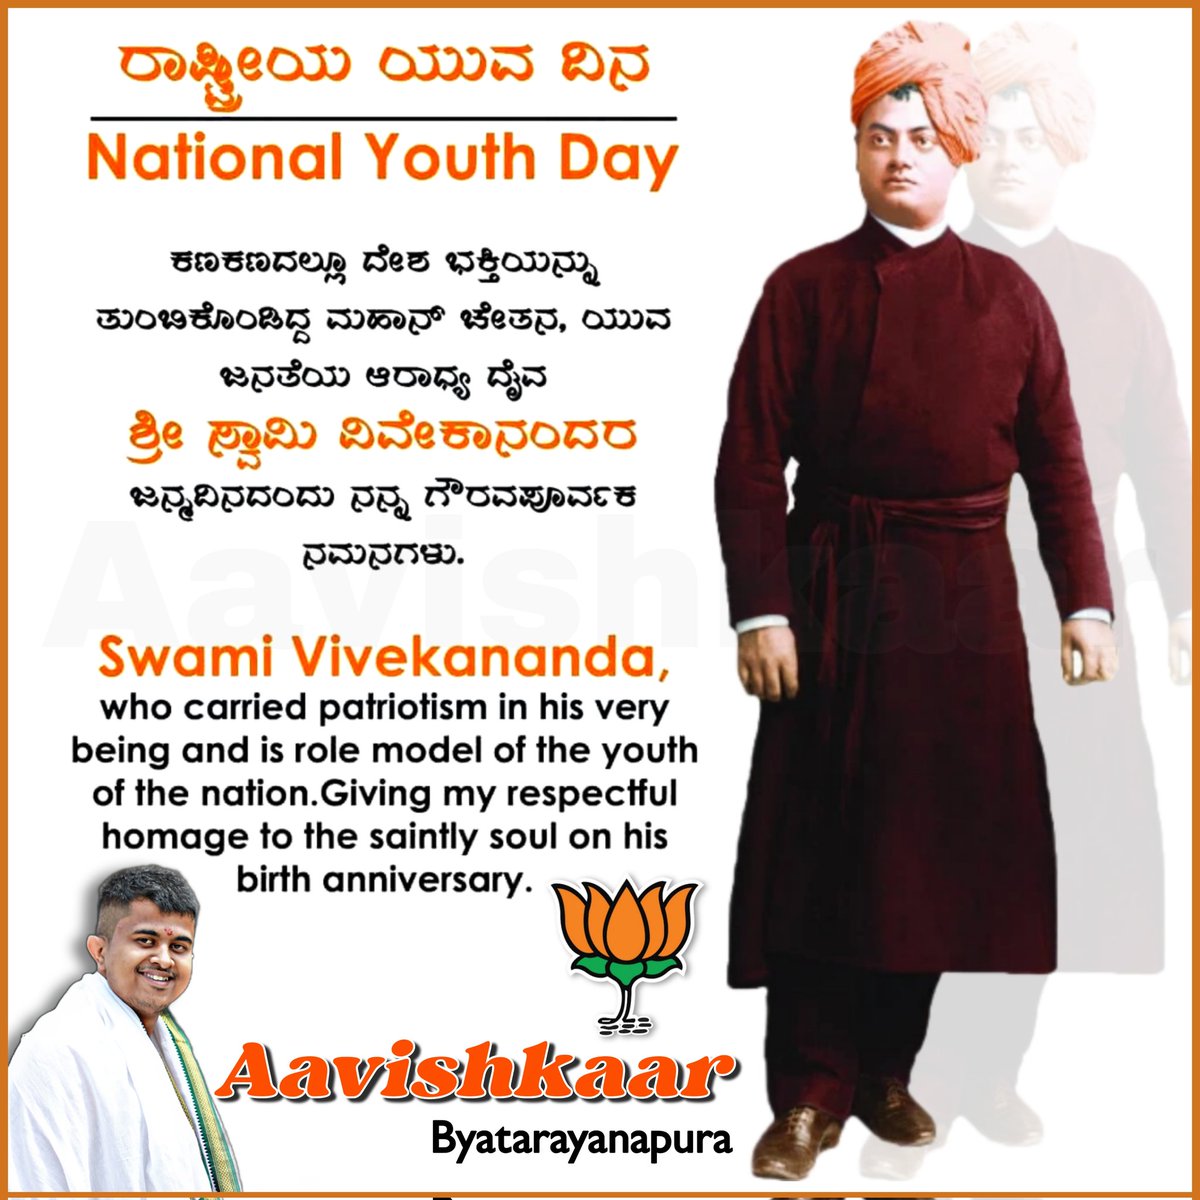 ರಾಷ್ಟ್ರೀಯ ಯುವ ದಿನ 
ಕಣಕಣದಲ್ಲೂ ದೇಶ ಭಕ್ತಿಯನ್ನು ತುಂಬಕೊಂಡಿದ್ದ ಮಹಾನ್ ಚೇತನ, ಯುವ ಜನತೆಯ ಆರಾಧ್ಯ ದೈವ ಶ್ರೀ. ಸ್ವಾಮಿ ವಿವೇಕಾನಂದರ ಜನ್ಮದಿನದಂದು ನನ್ನ ಗೌರವಪೂರ್ವಕ ನಮನಗಳು.

#NationalYouthsDay #SwamiVivekananda #BirthAnniversary #BJP